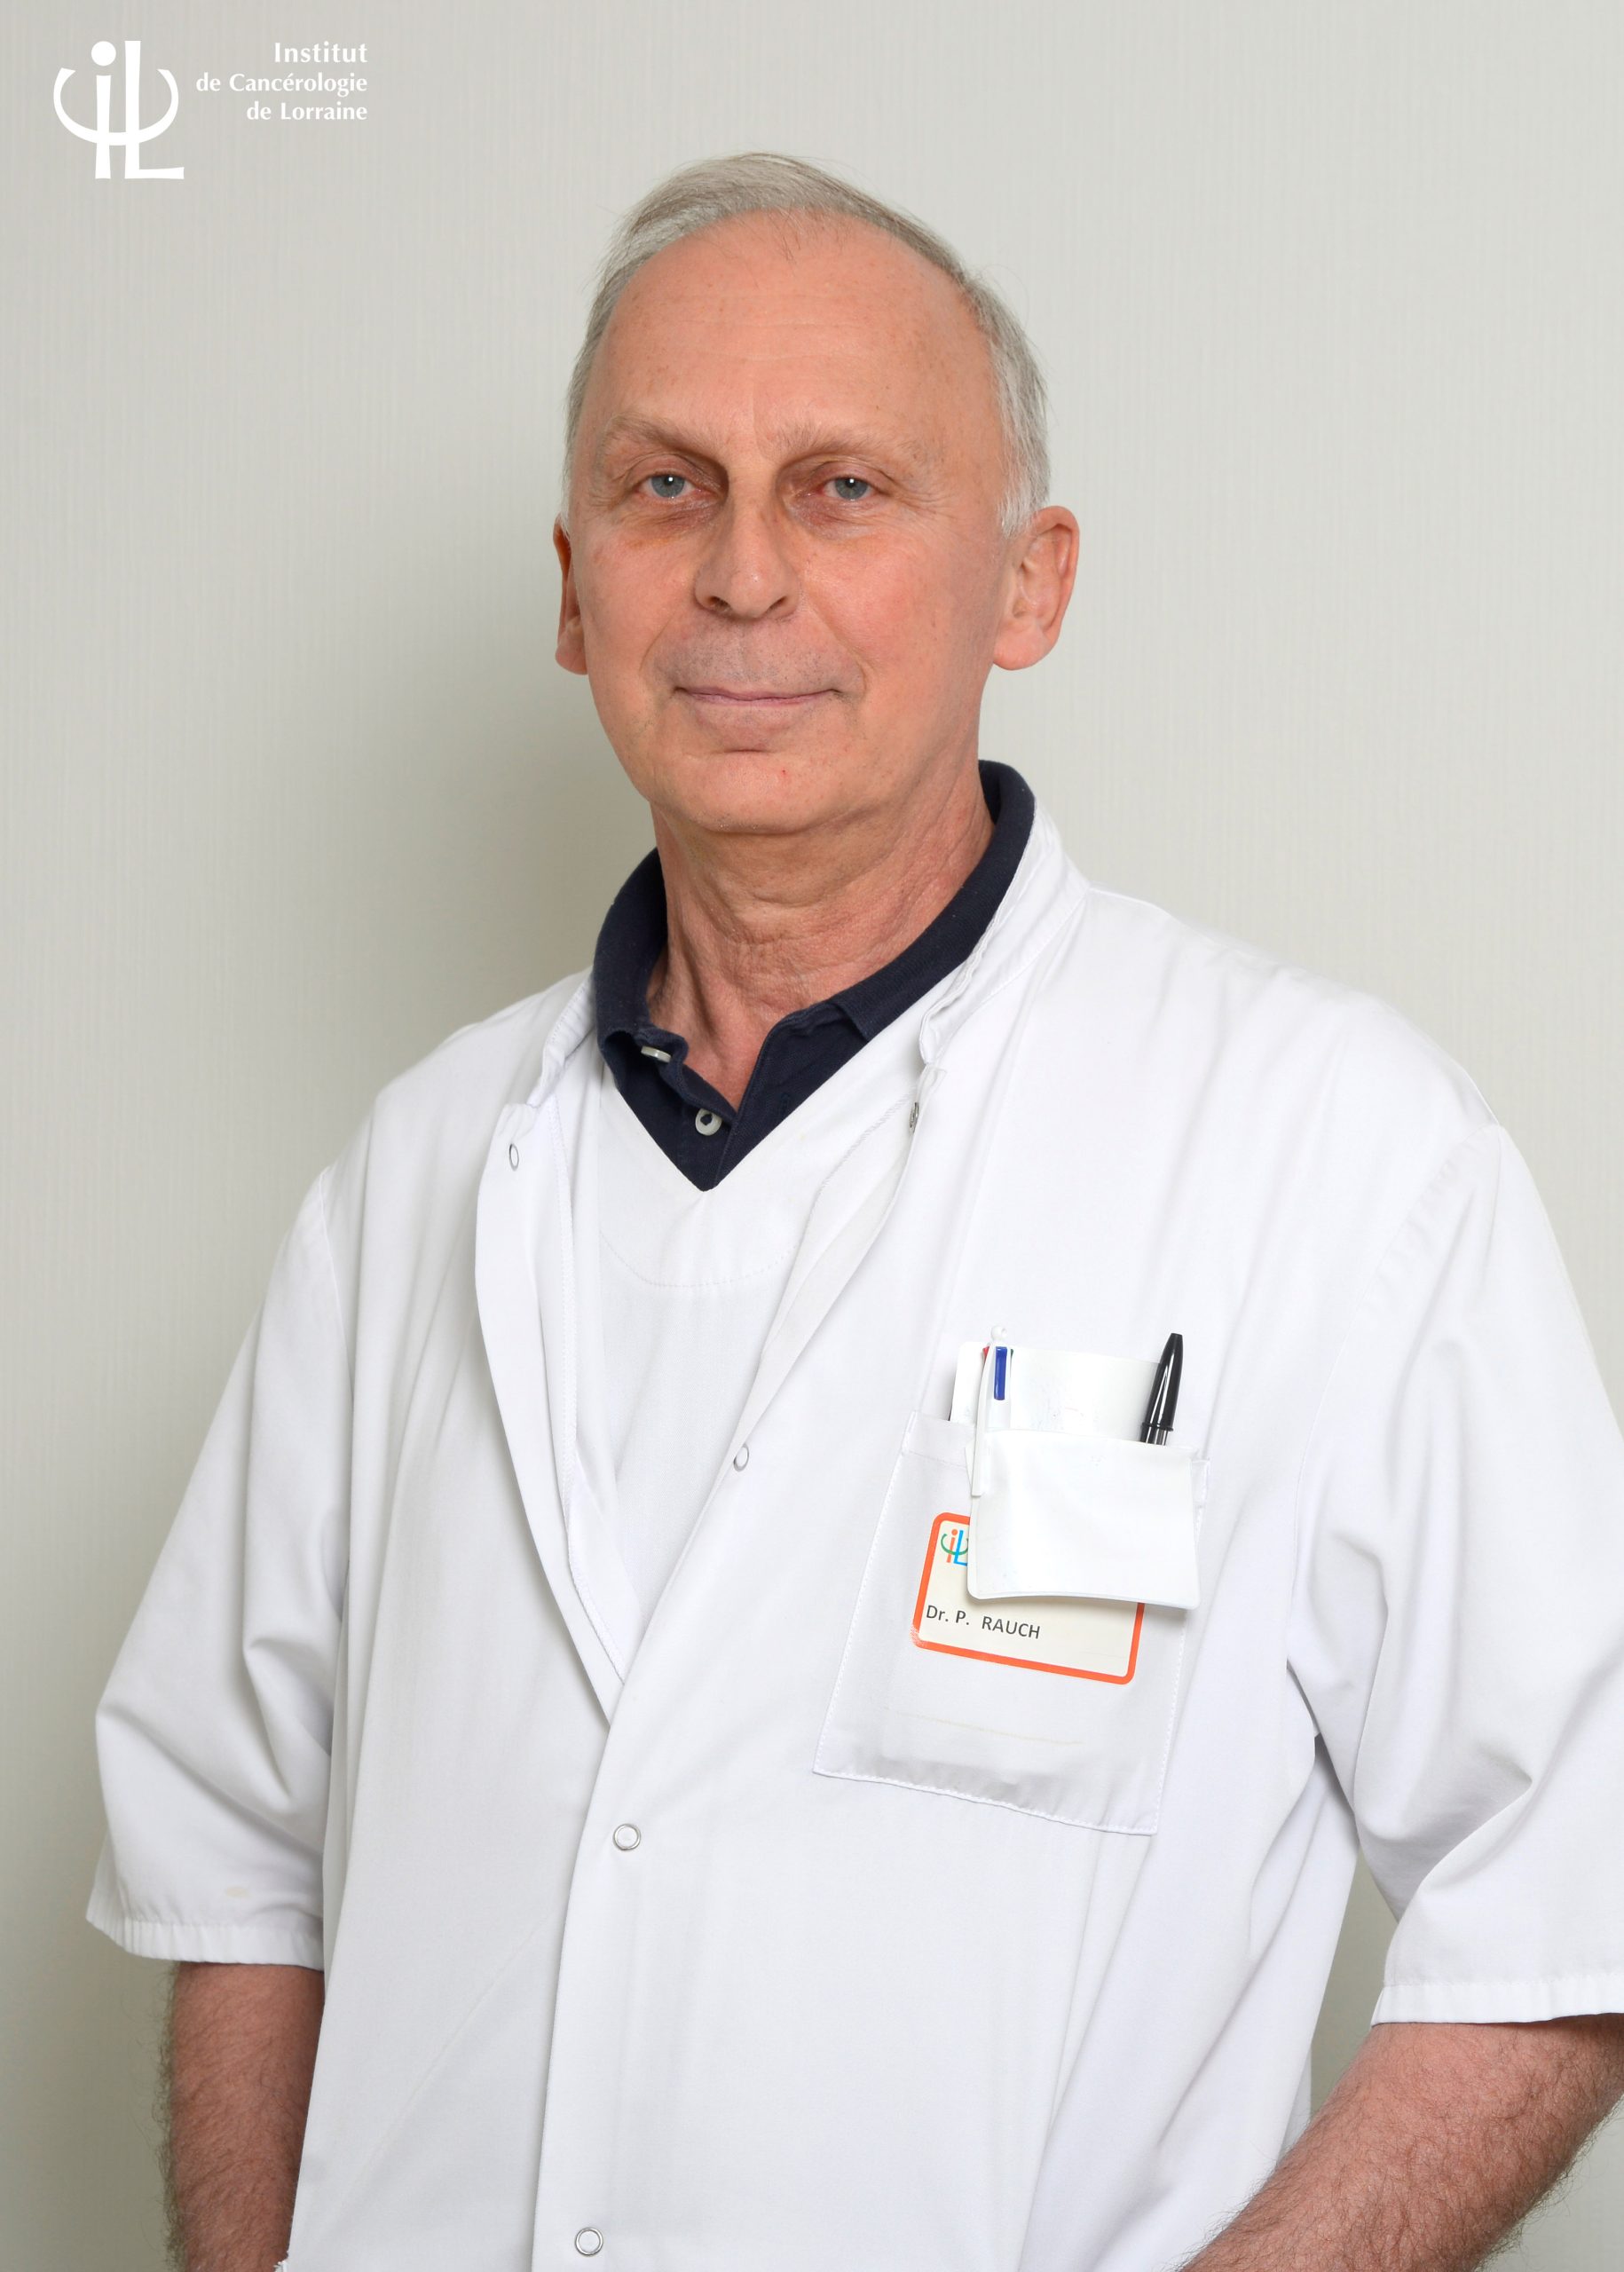 Dr RAUCH Philippe